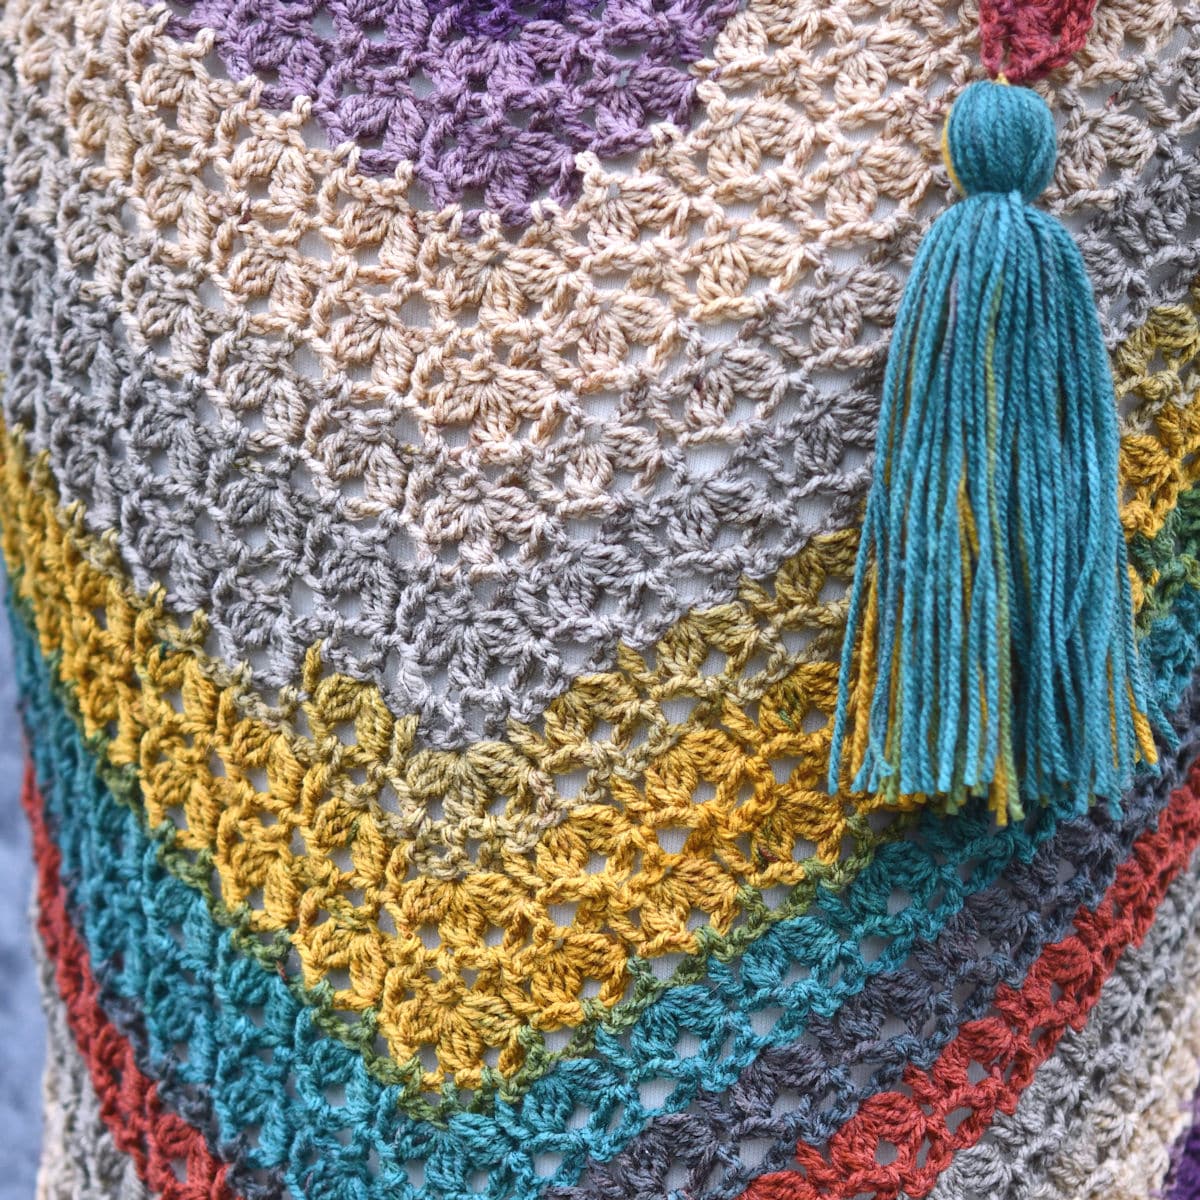 Make It Crochet: Crochet Triangle Shawl in Mandala Yarn by Kim Guzman